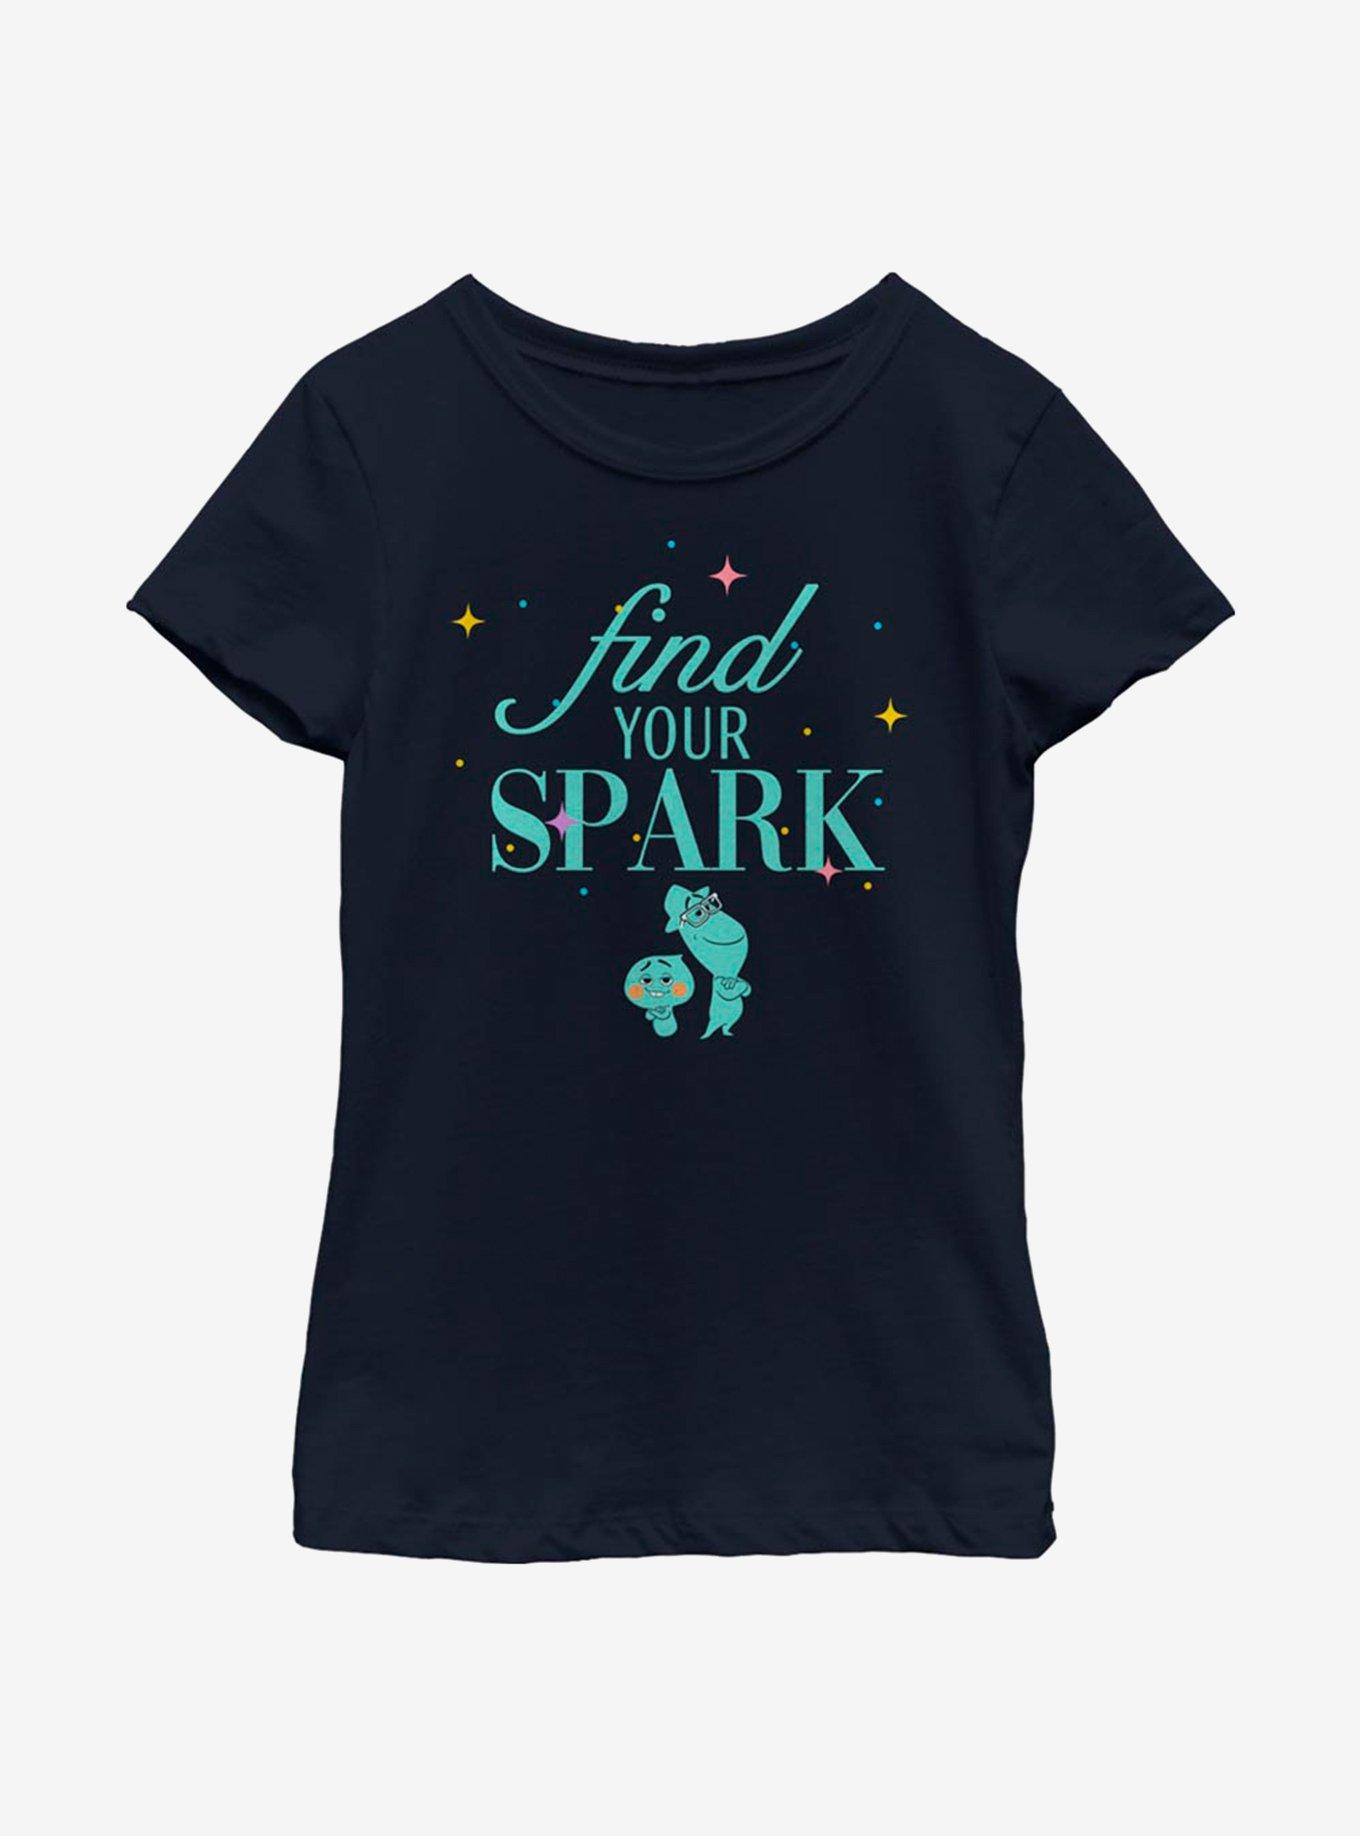 Disney Pixar Soul Find Your Spark Youth Girls T-Shirt, NAVY, hi-res